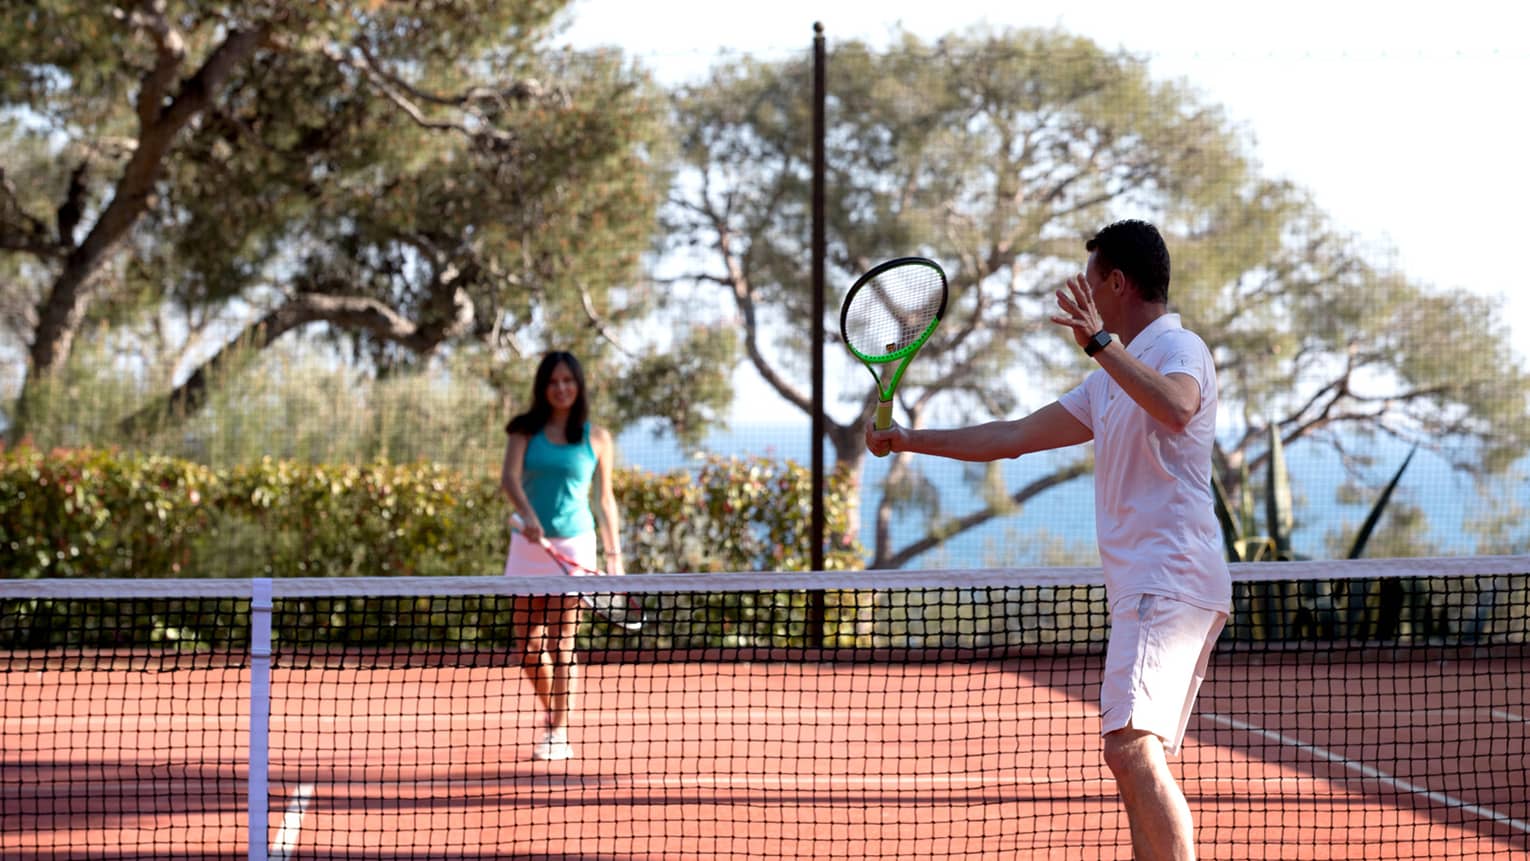 Man swings tennis racket, woman on other side of net